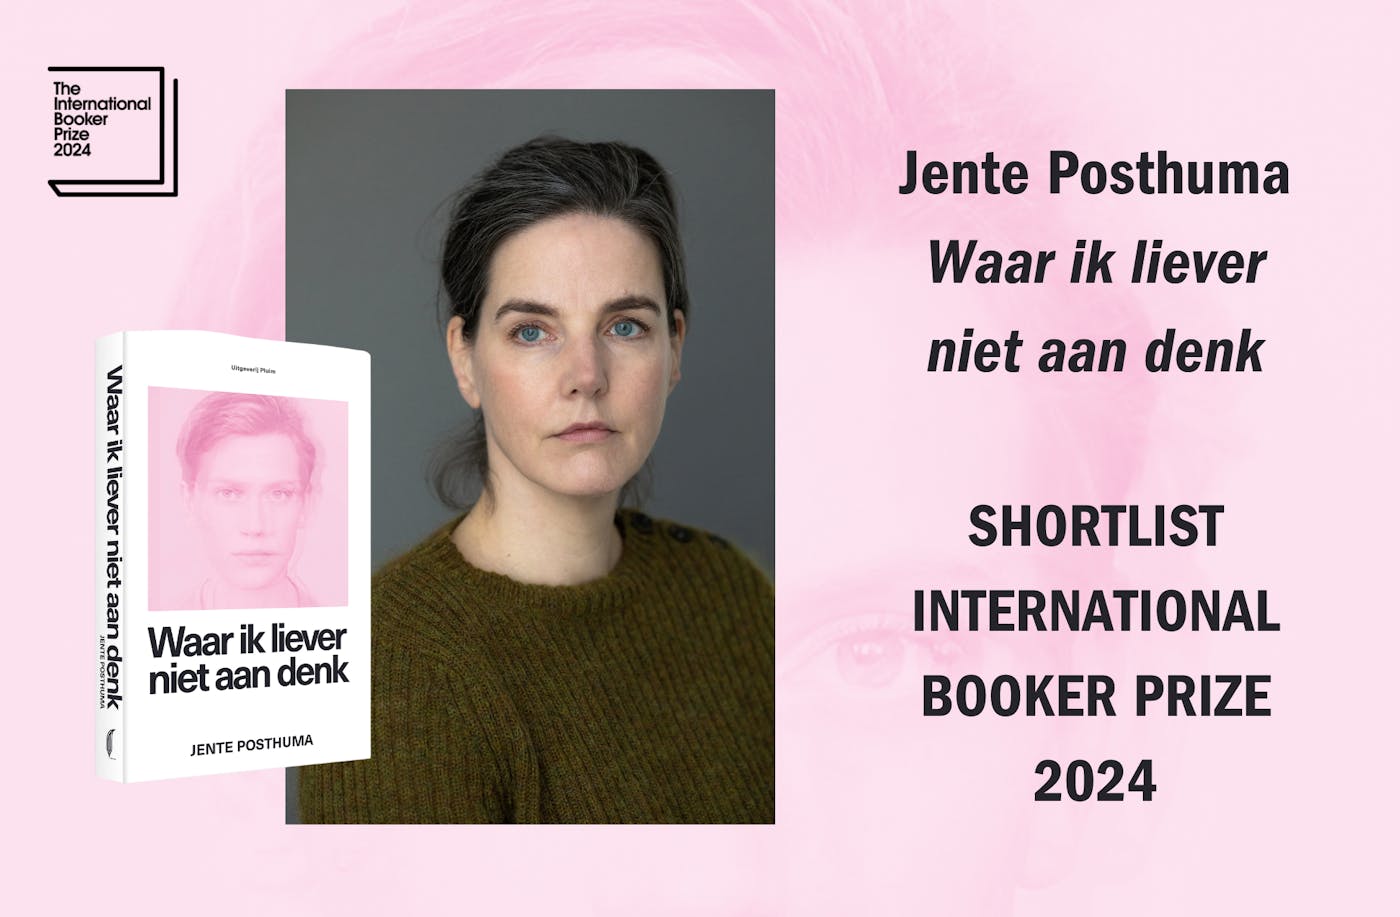 Jente Posthuma staat op de shortlist International Booker Prize 2024